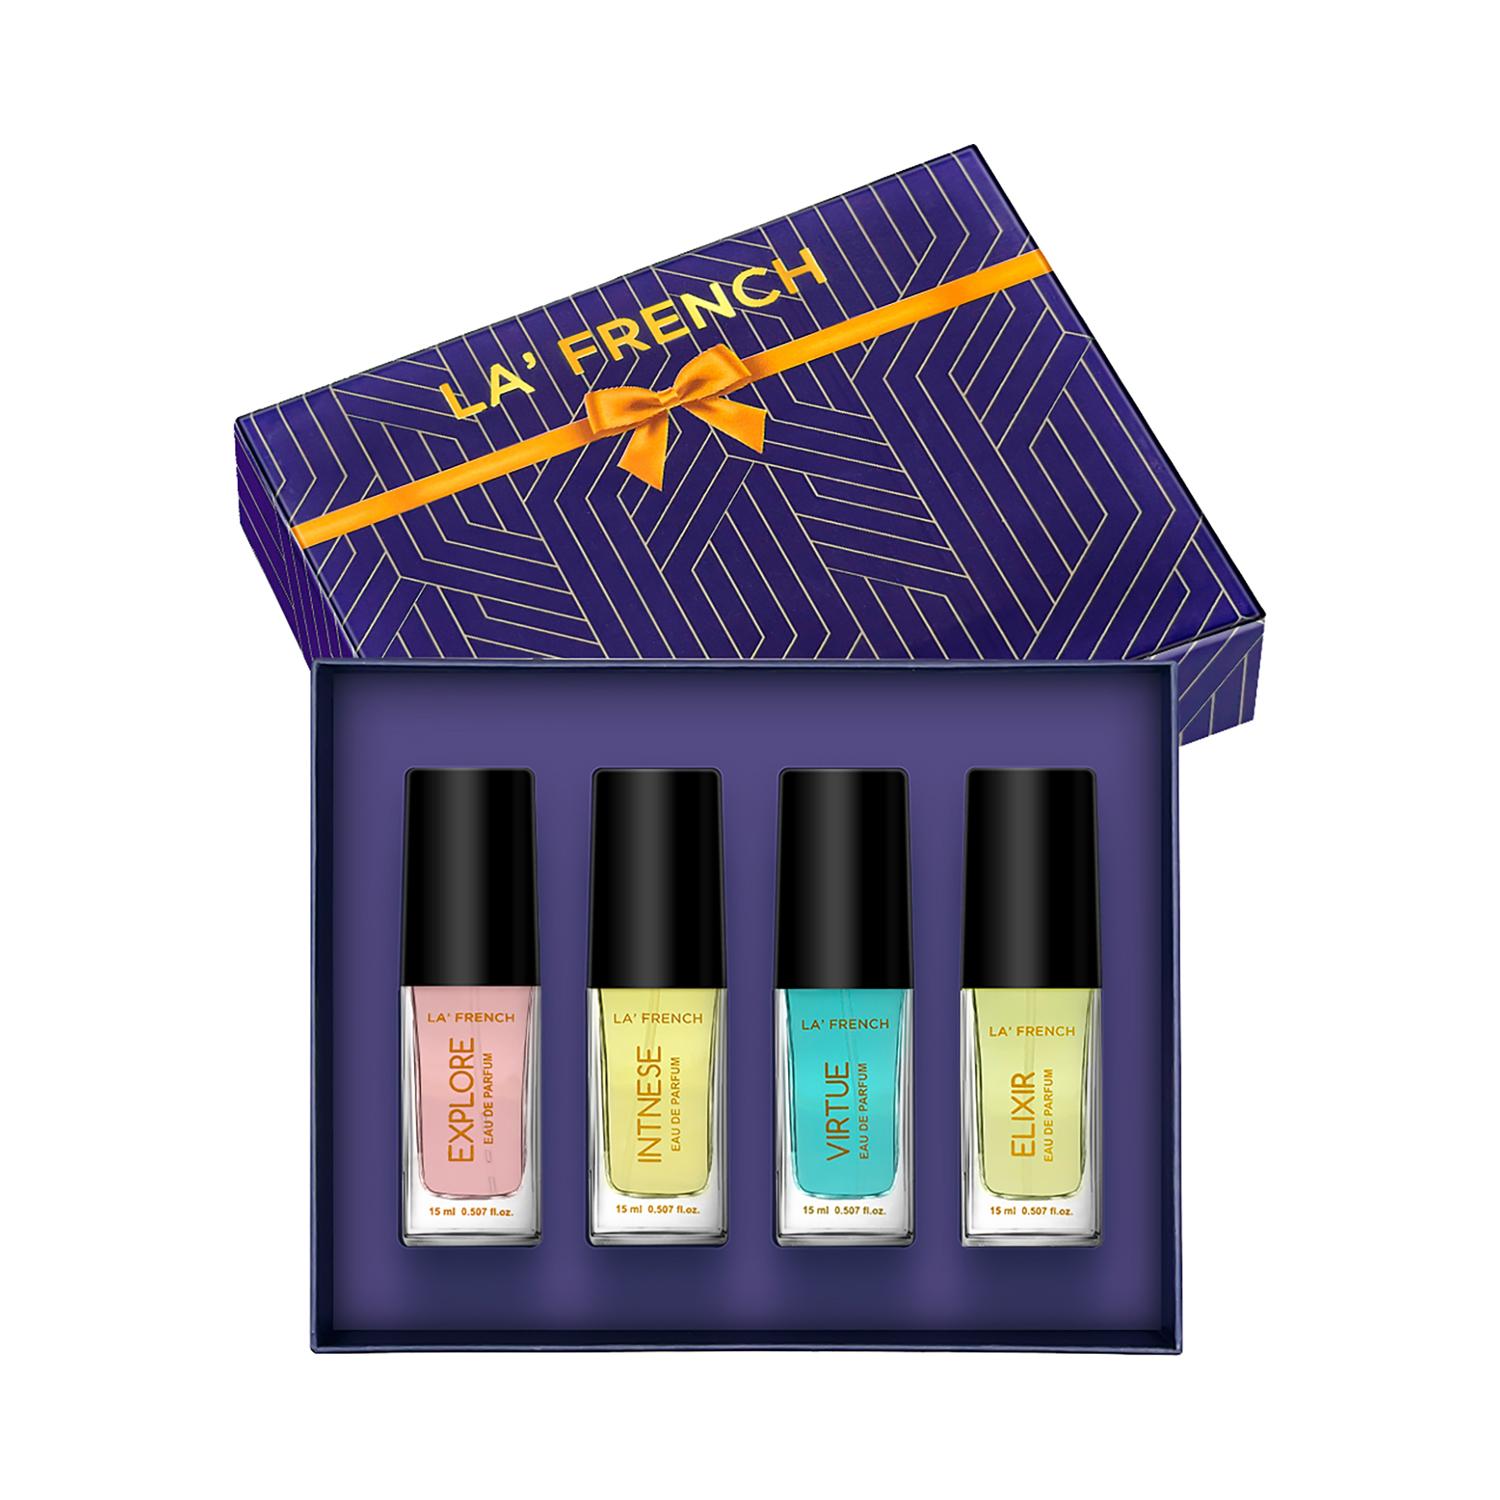 LA' French | LA' French Perfume Gift Set (4 pcs)